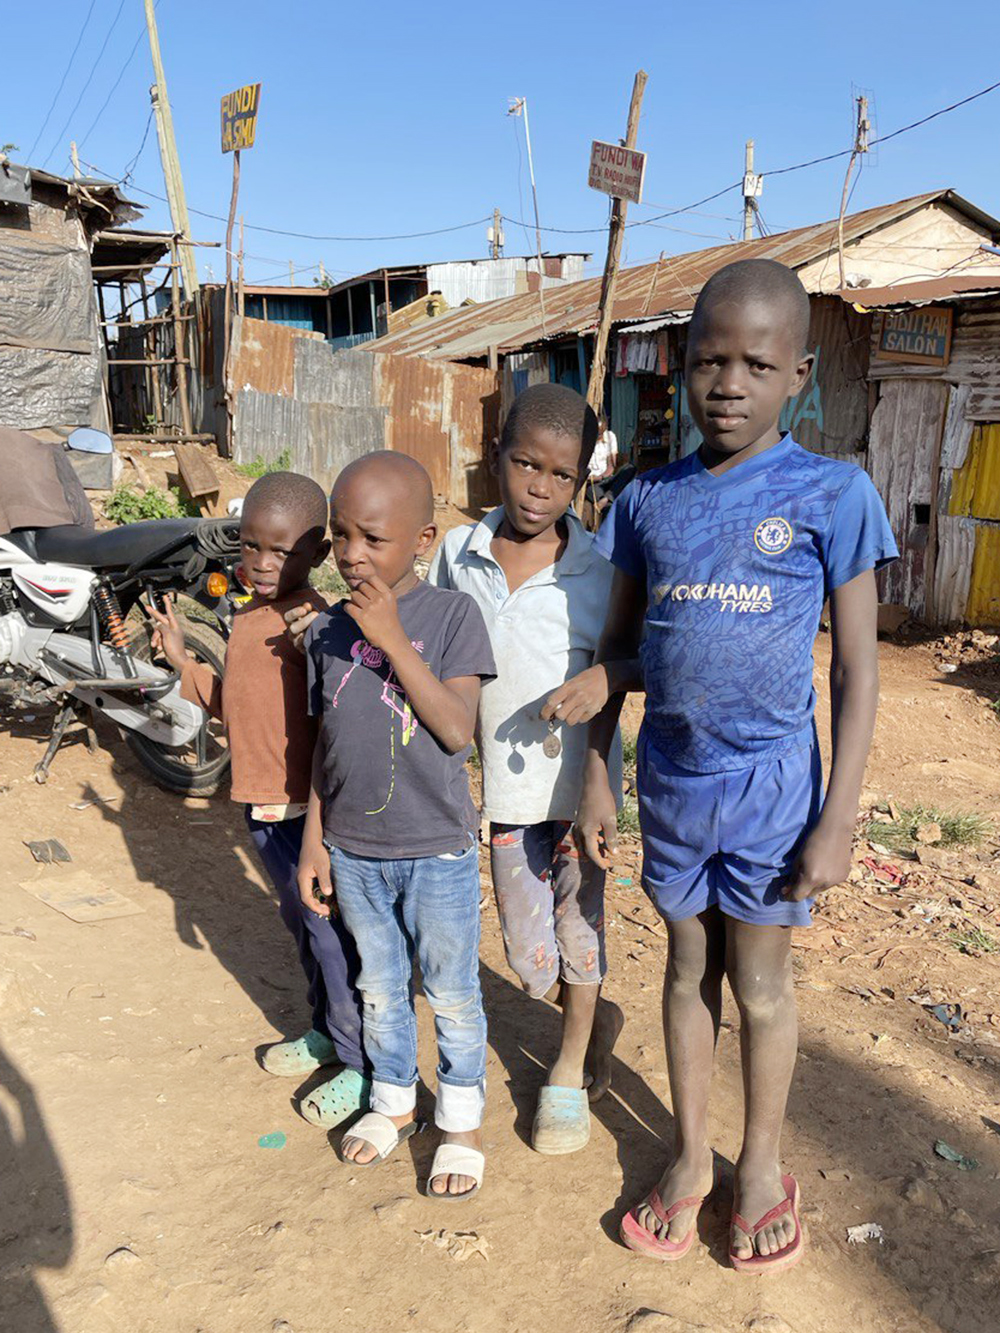 Одни из немногих ребят в Кибере, кто разрешил их сфотографировать